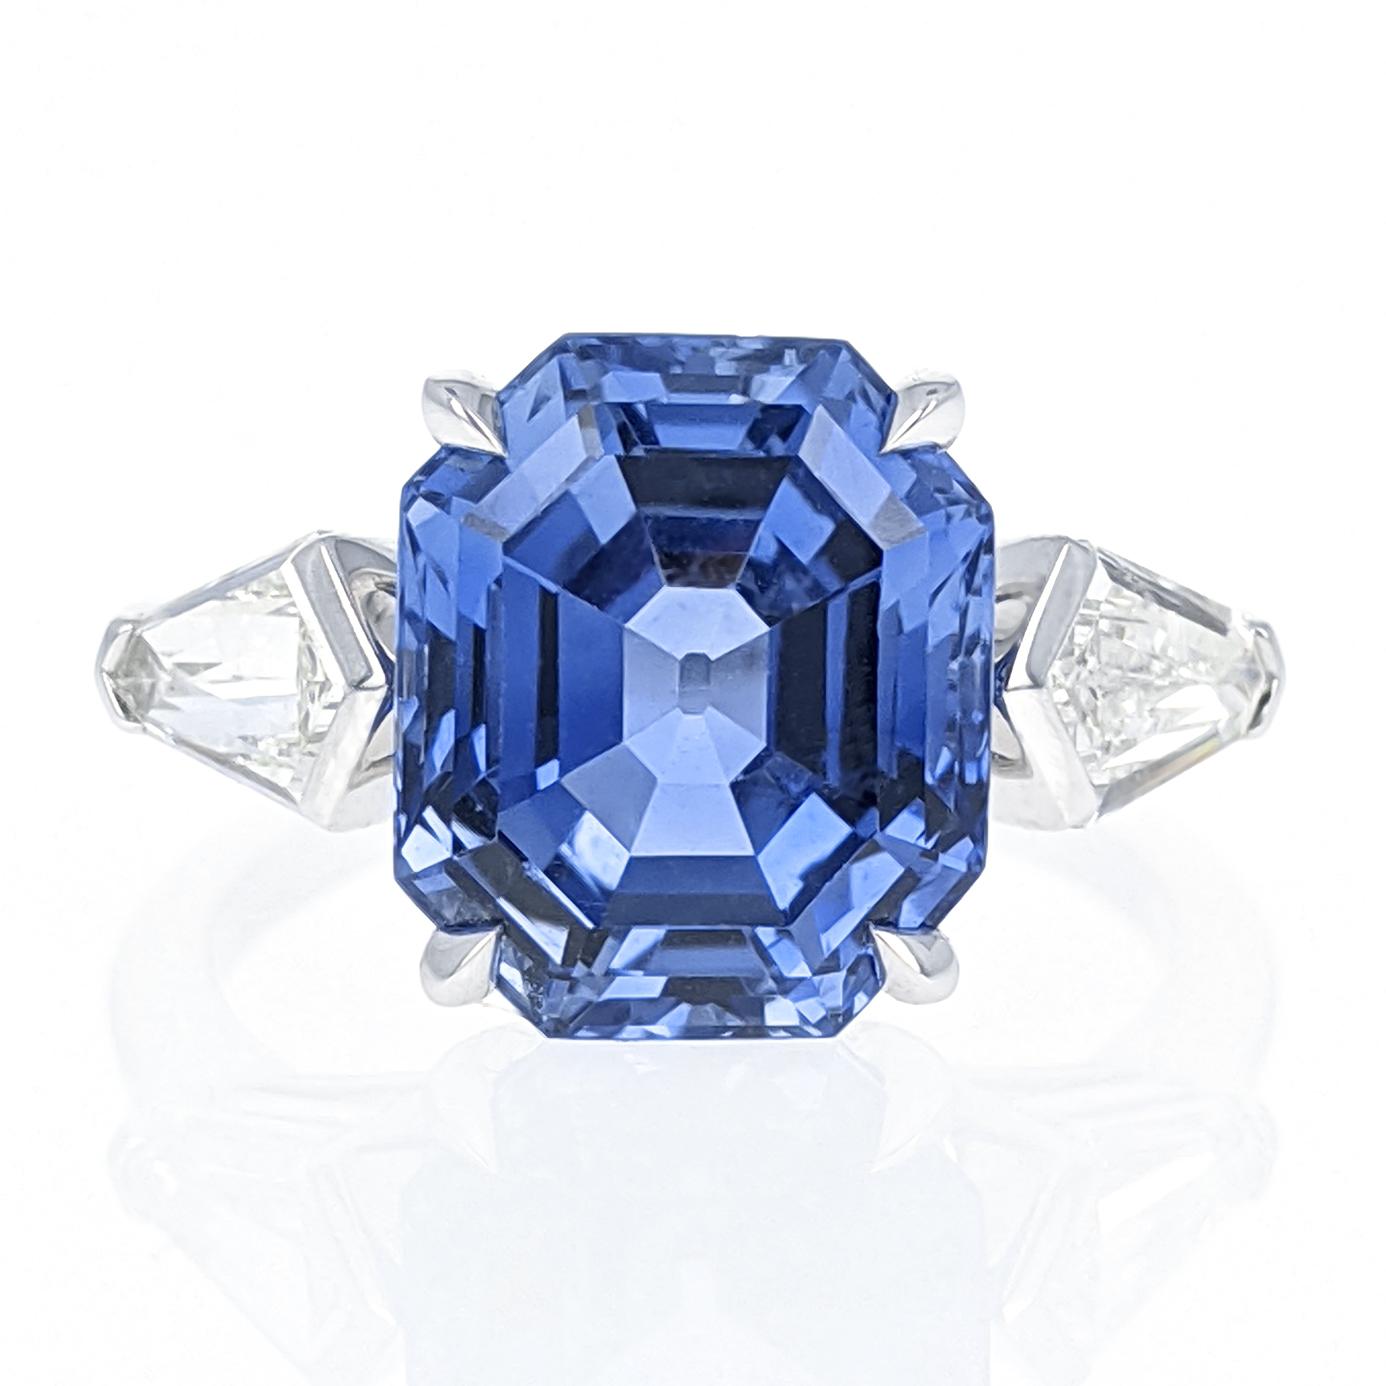 Octagon Cut 6.06 Carat Ceylon Sapphire Diamond Platinum Ring